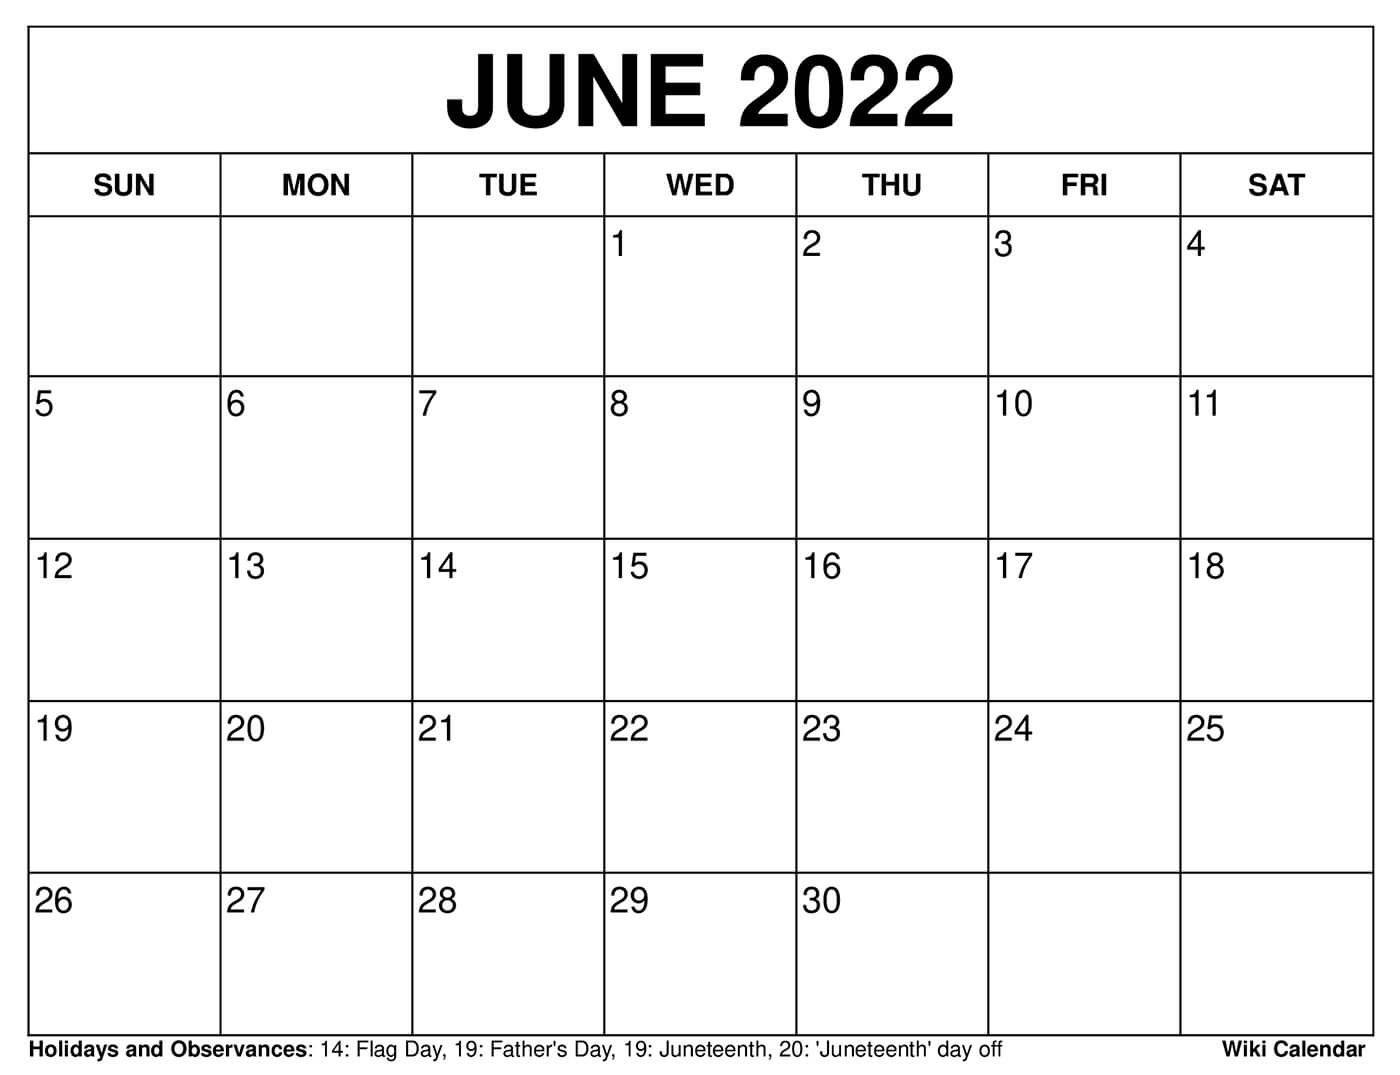 June 2022 Free Printable Calendar Free Printable June 2022 Calendars - Wiki Calendar